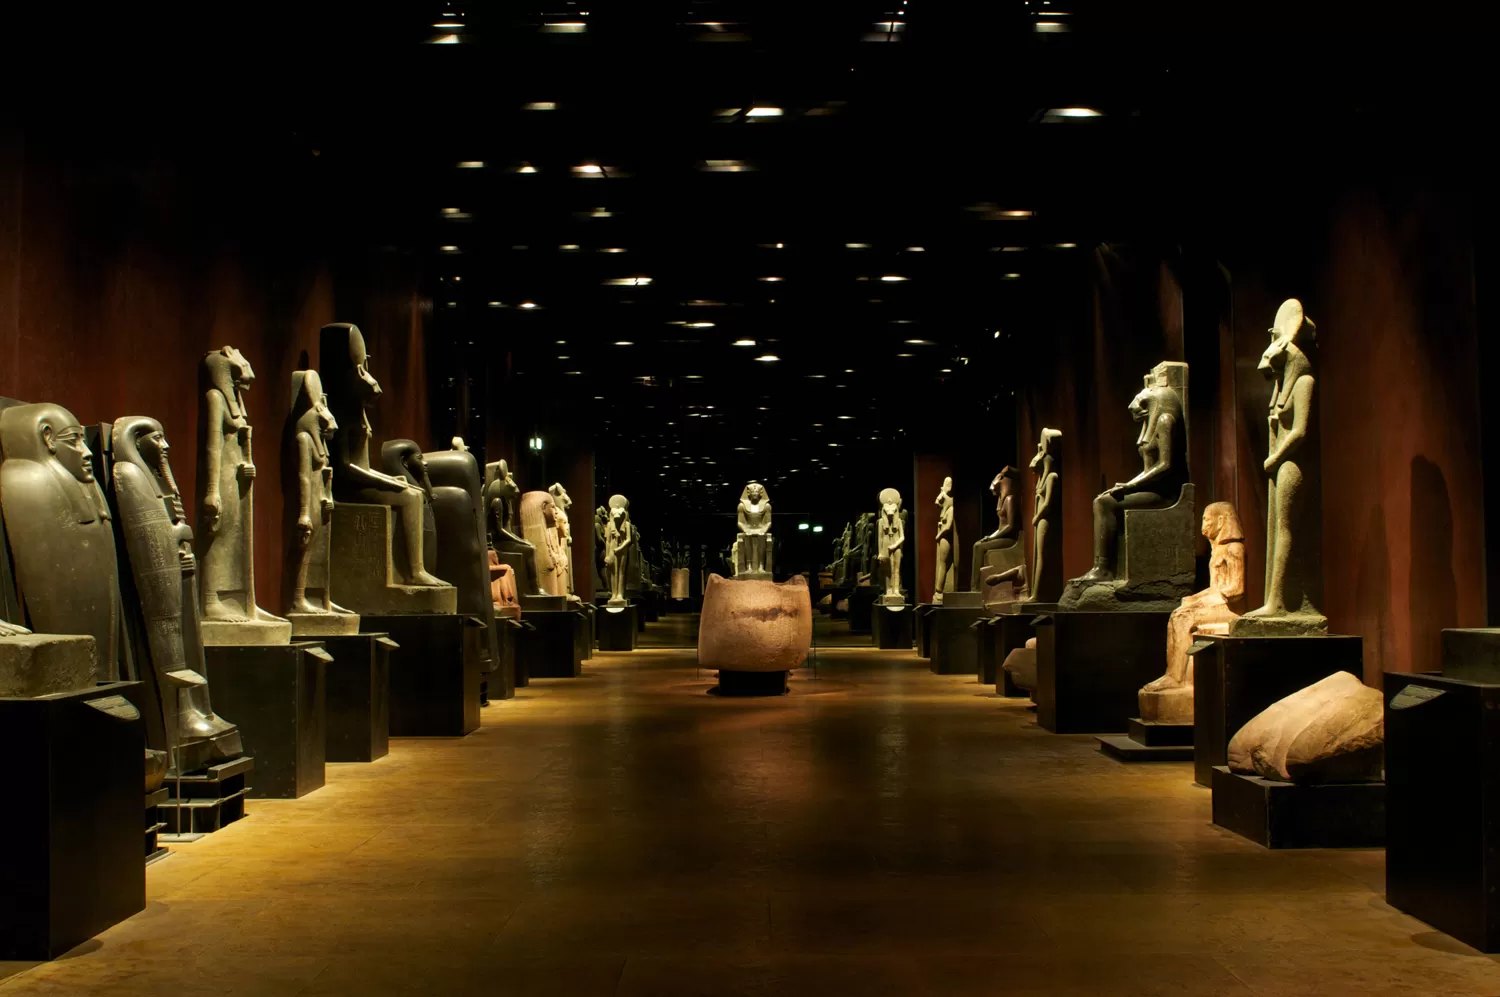 Il Museo Egizio di Torino cambia look per celebrare i primi 200 anni di vita: aprono al pubblico nuovi ambienti